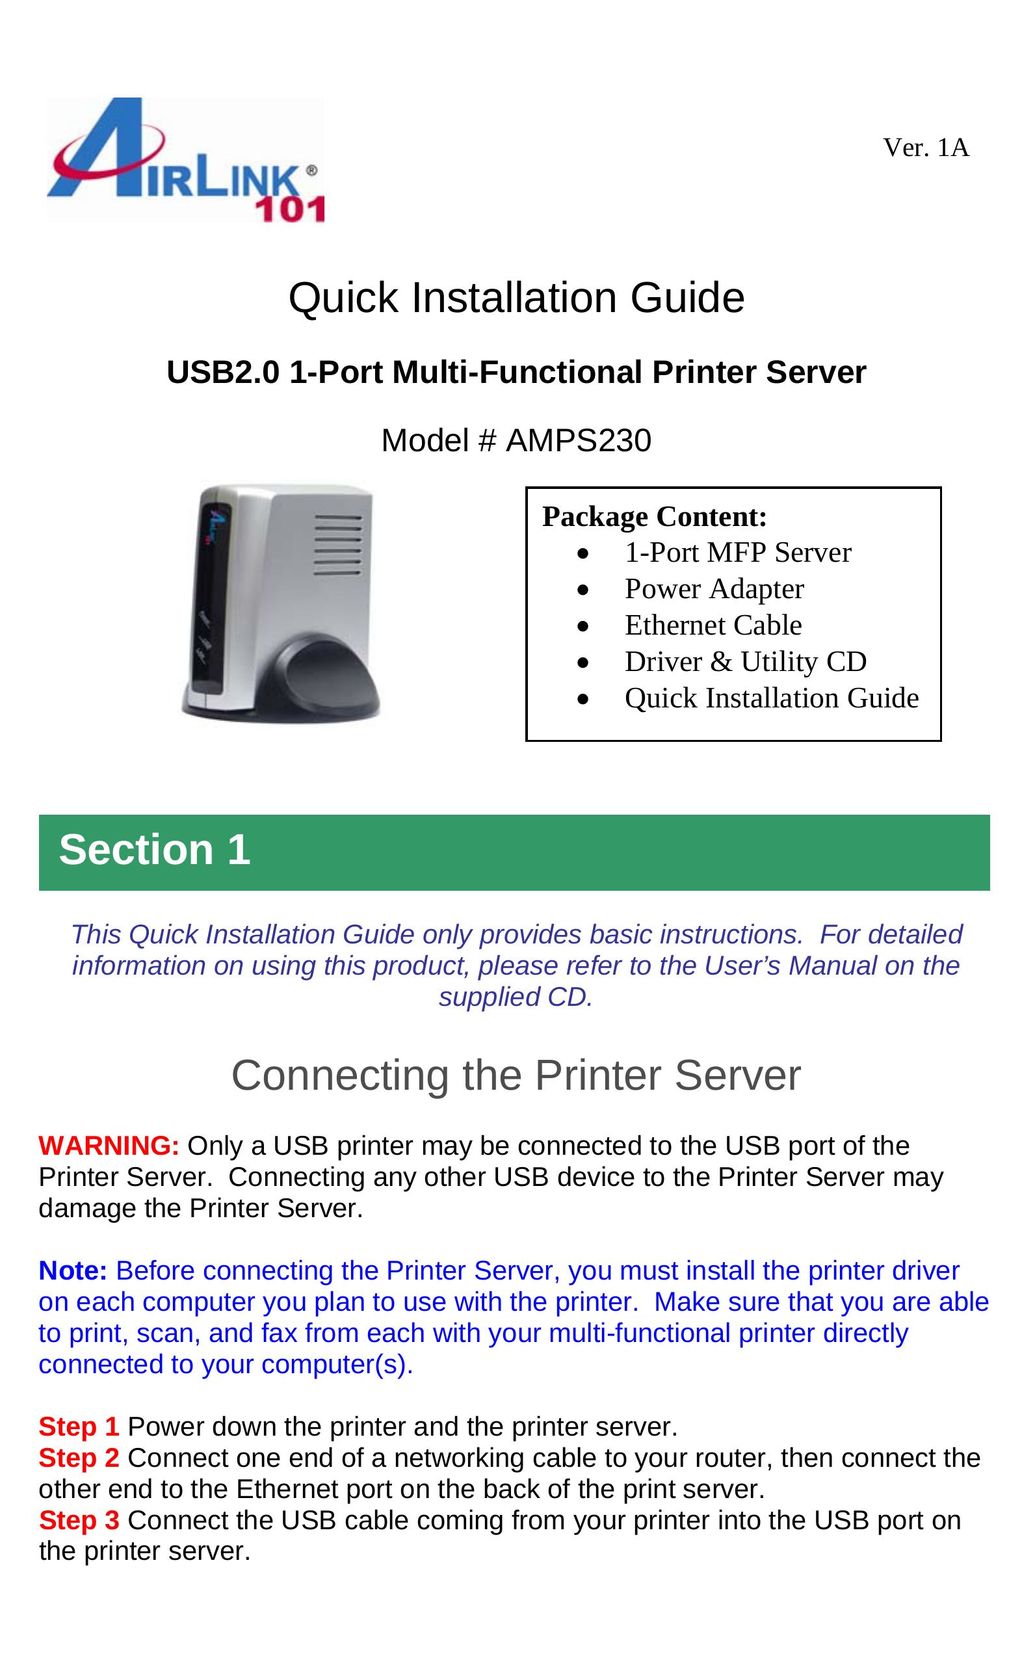 Airlink101 AMPS230 Printer User Manual